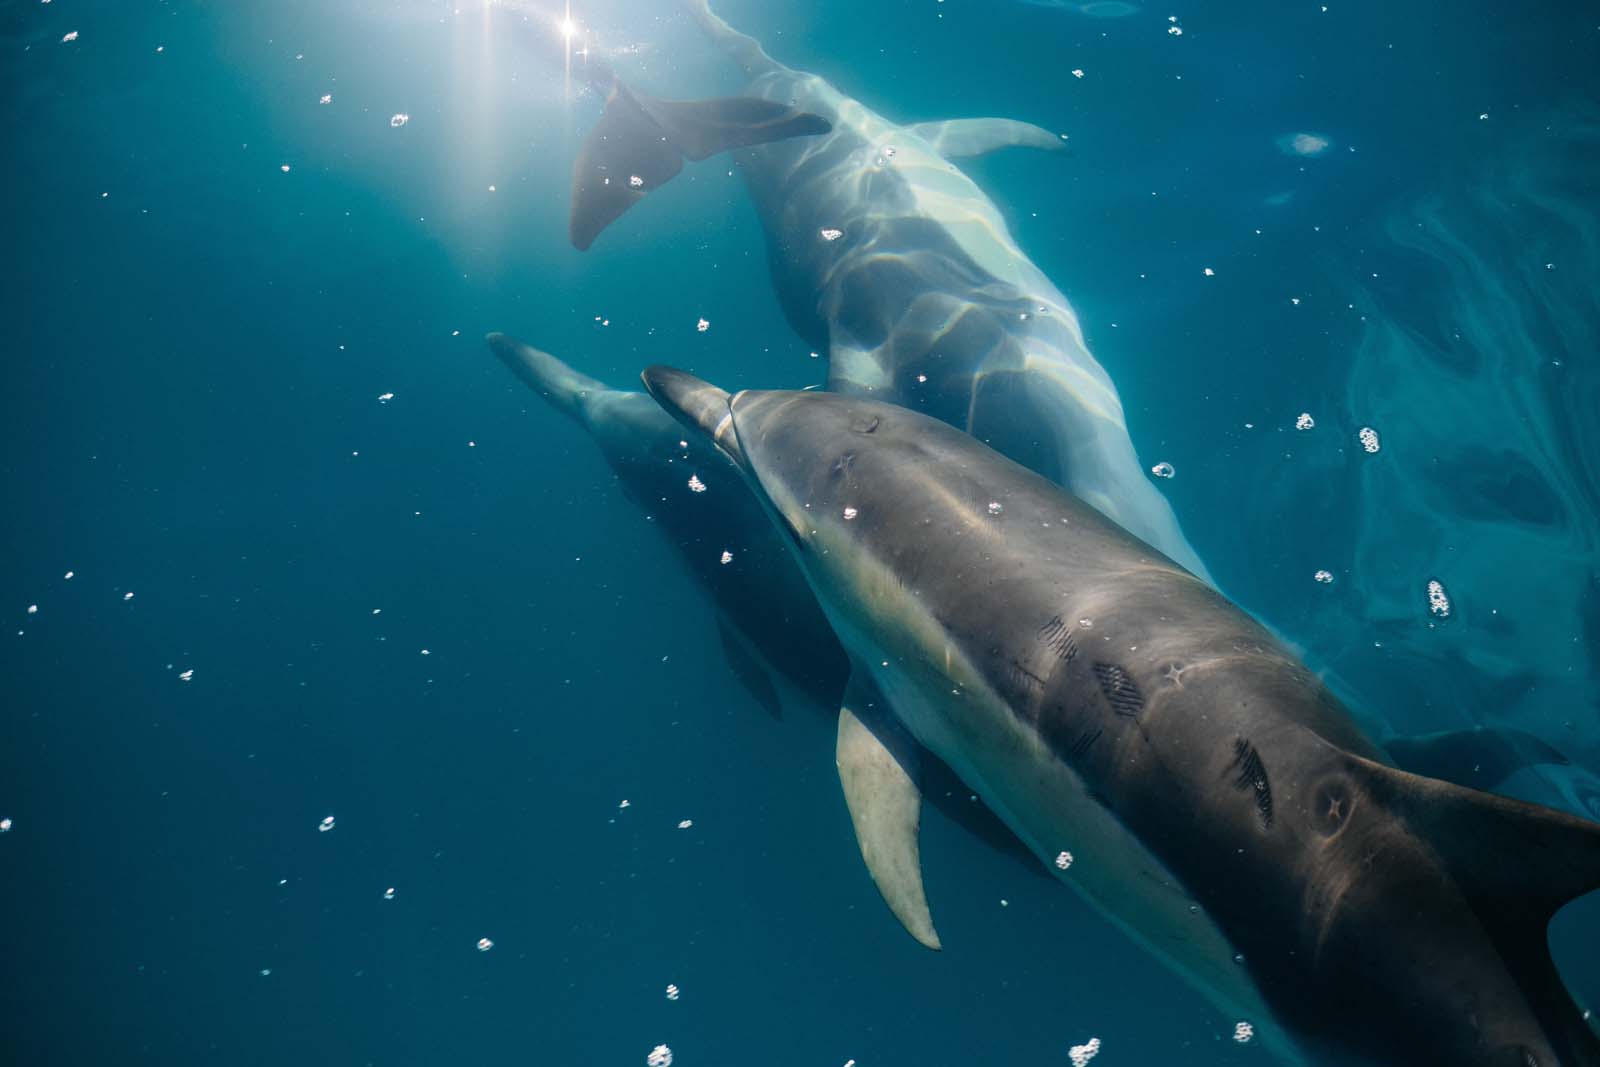 dolphin encounter kaikoura, kaikoura dolphin swim, green dolphin kaikoura, dolphin swim kaikoura, kaikoura dolphin, dolphin swimming kaikoura, whale watch kaikoura